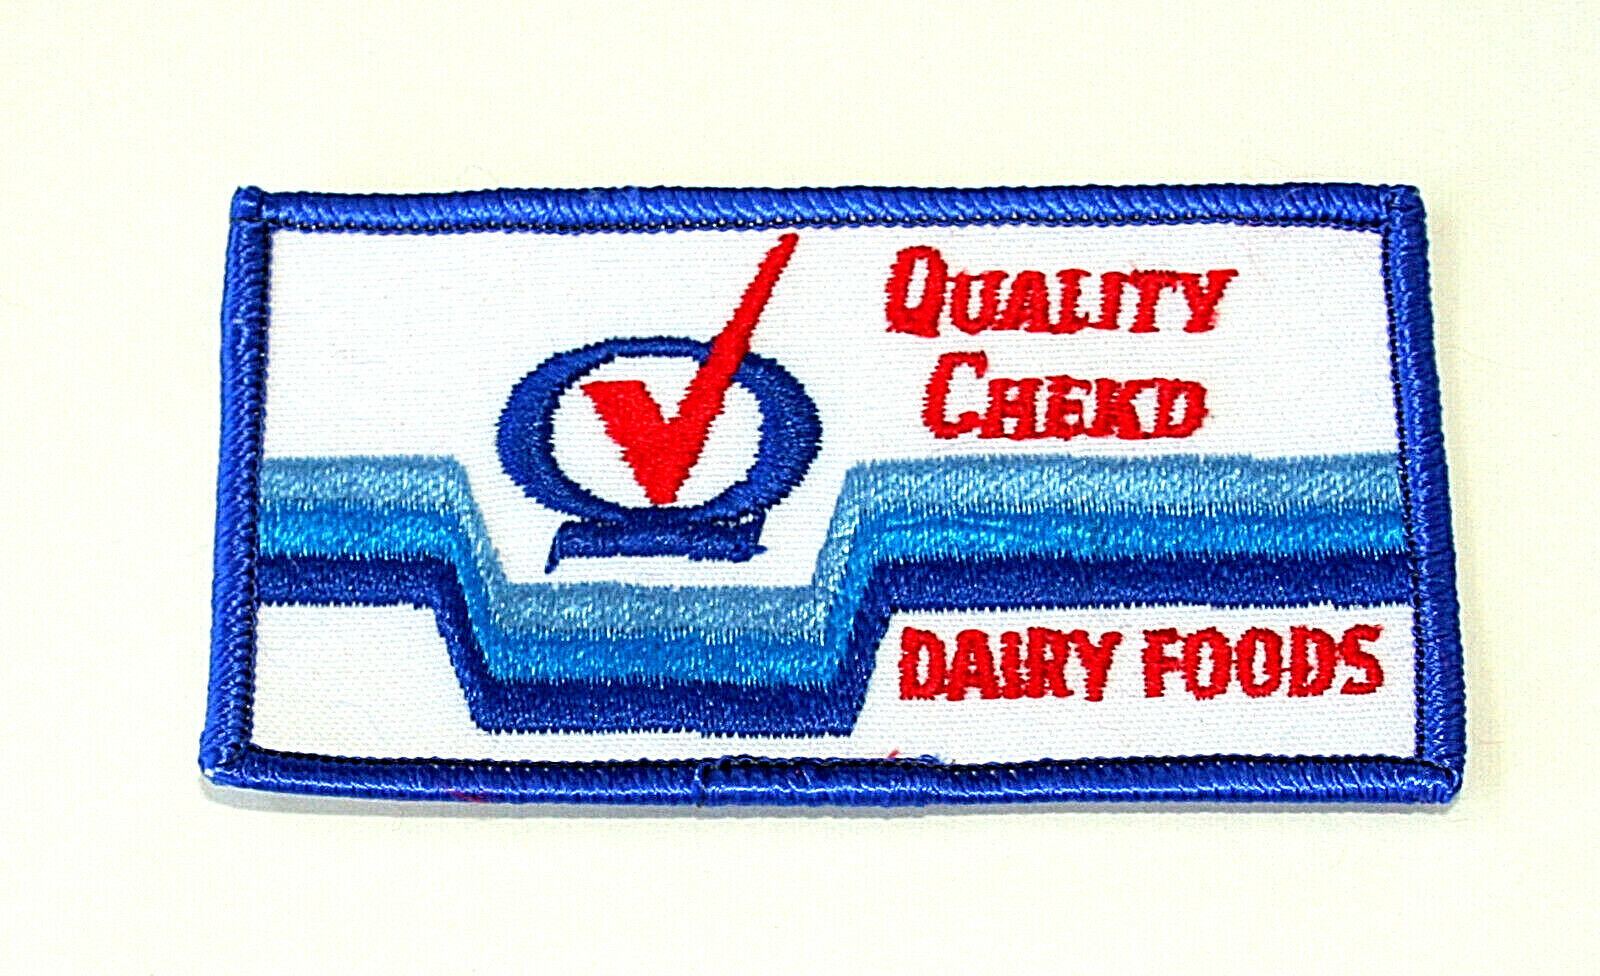 Quality Checkd Dairy Milk Foods Farm Driver Uniform Patch 1970s NOS New 